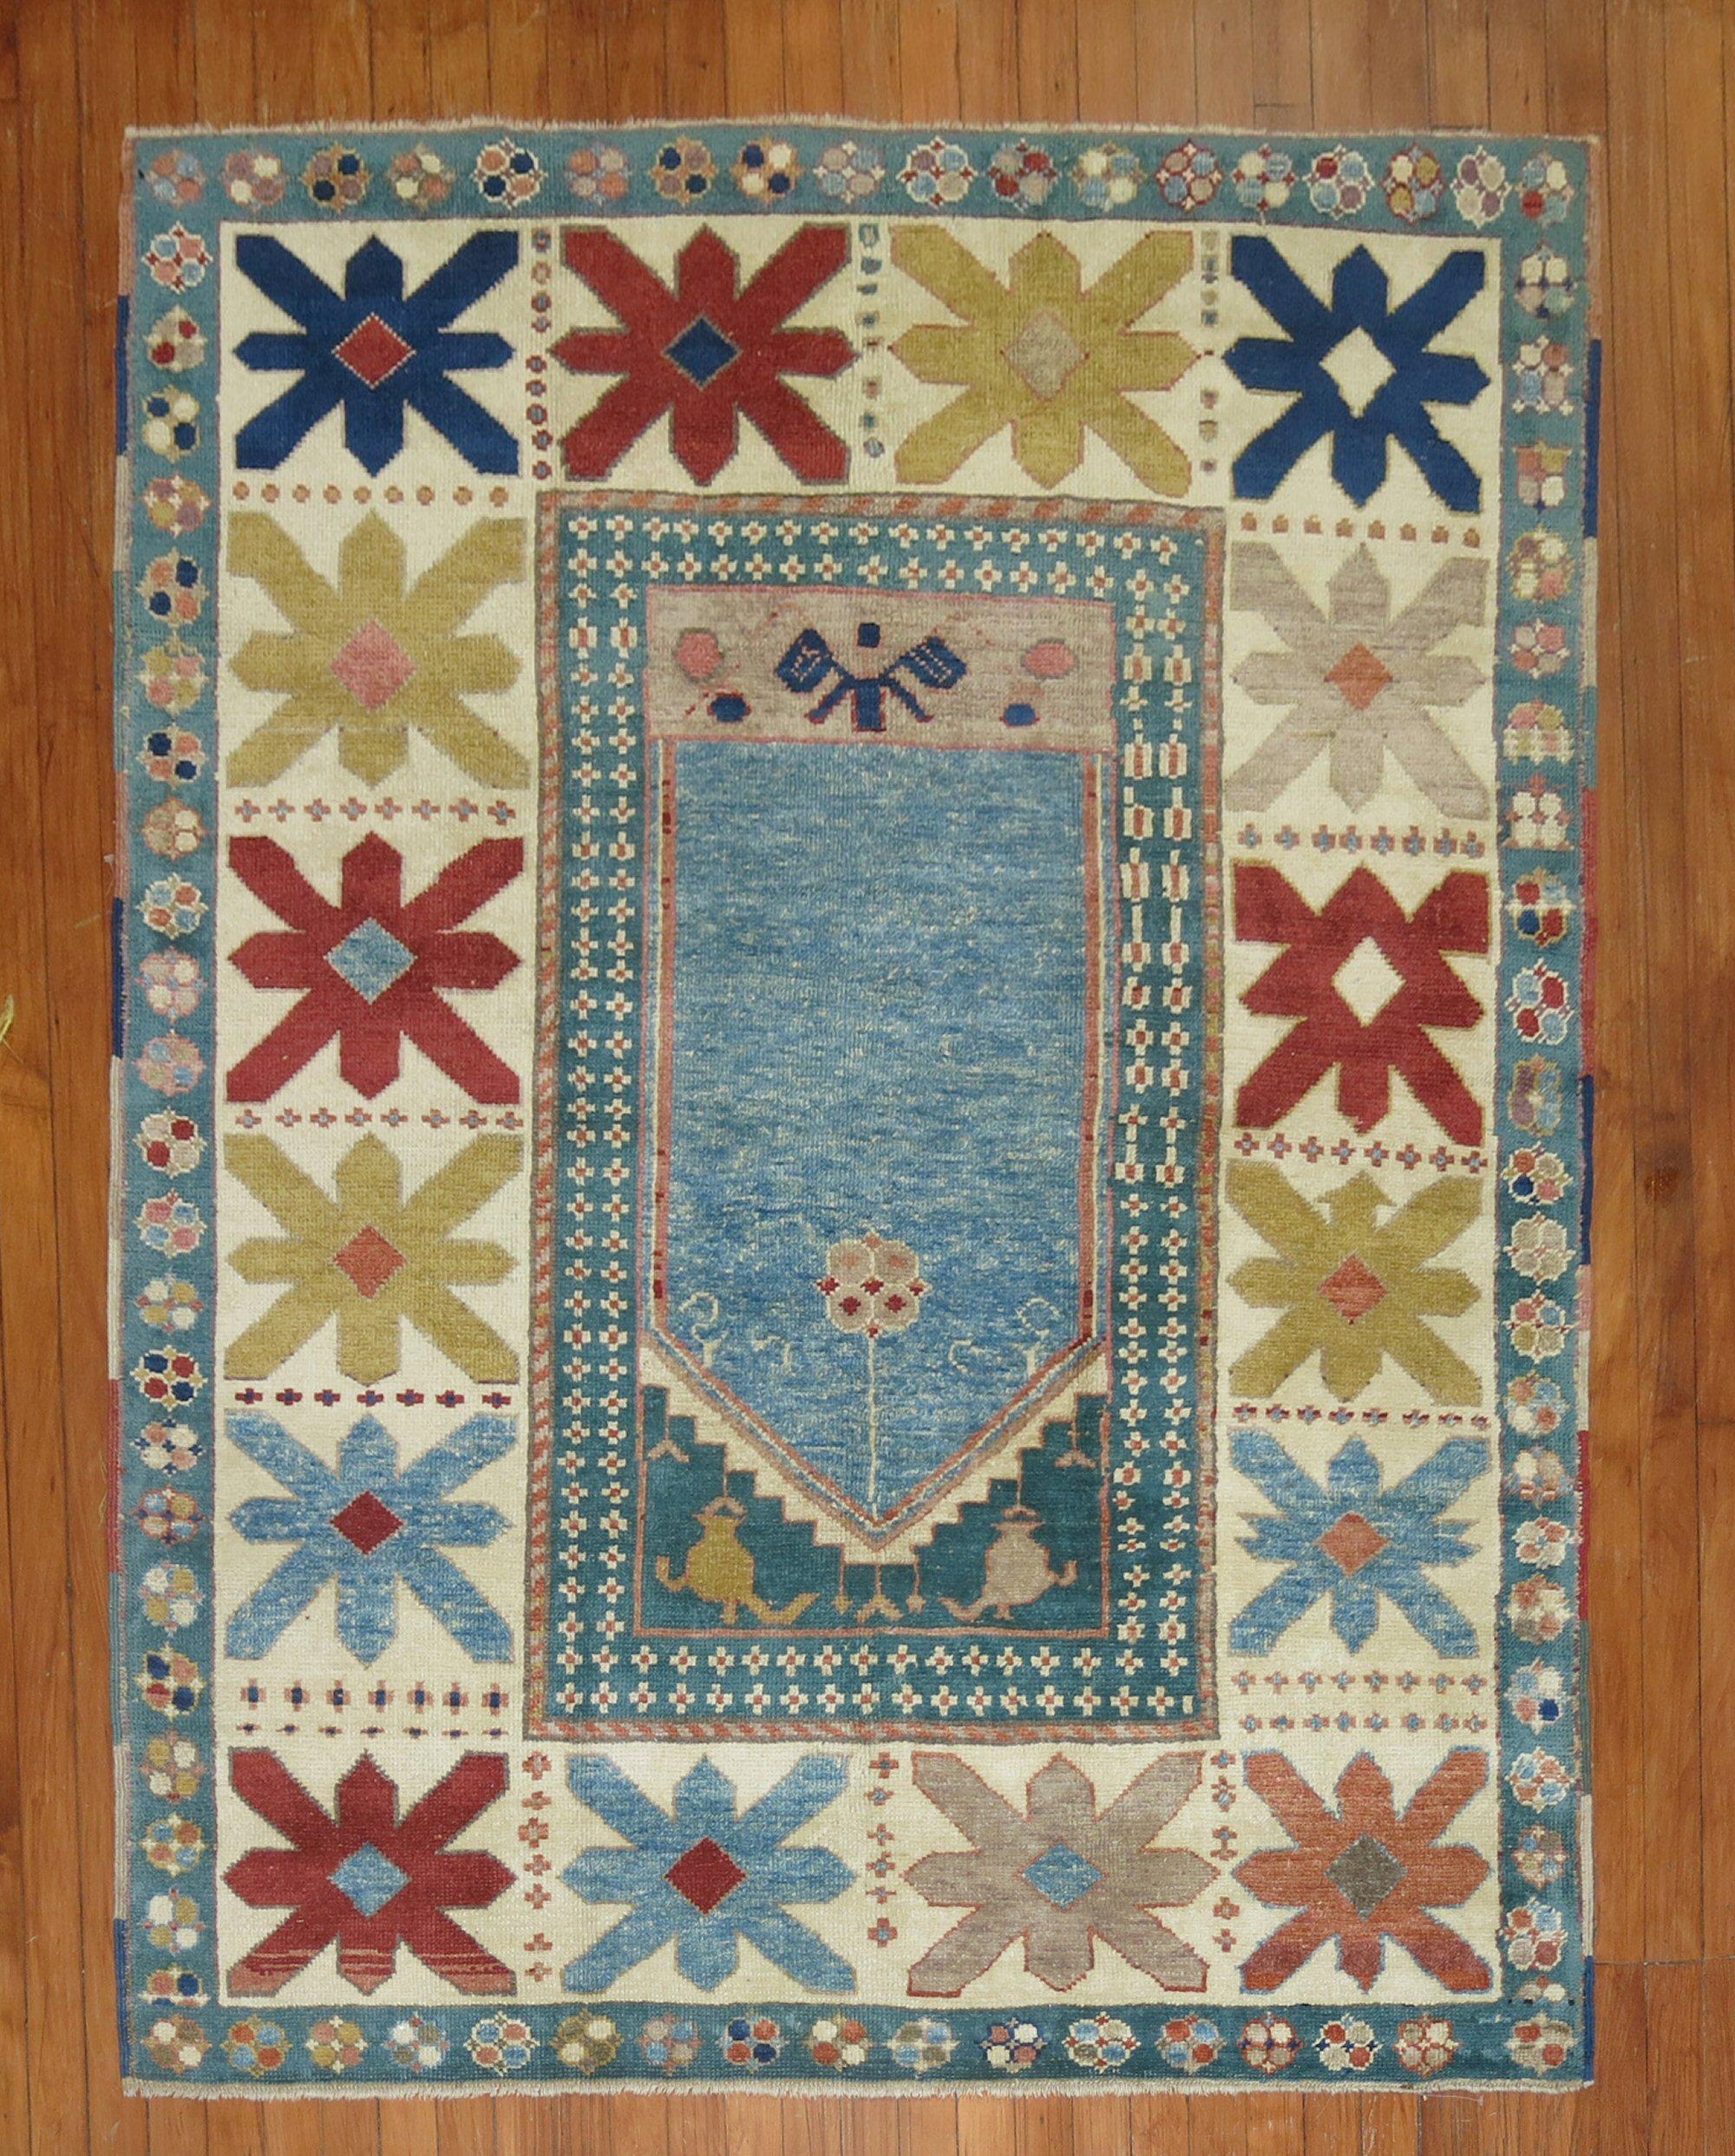 Tapis turc Konya de la fin du 20e siècle avec un motif de niche de prière sur un champ bleu

Mesures : 4'9'' x 6'1''.